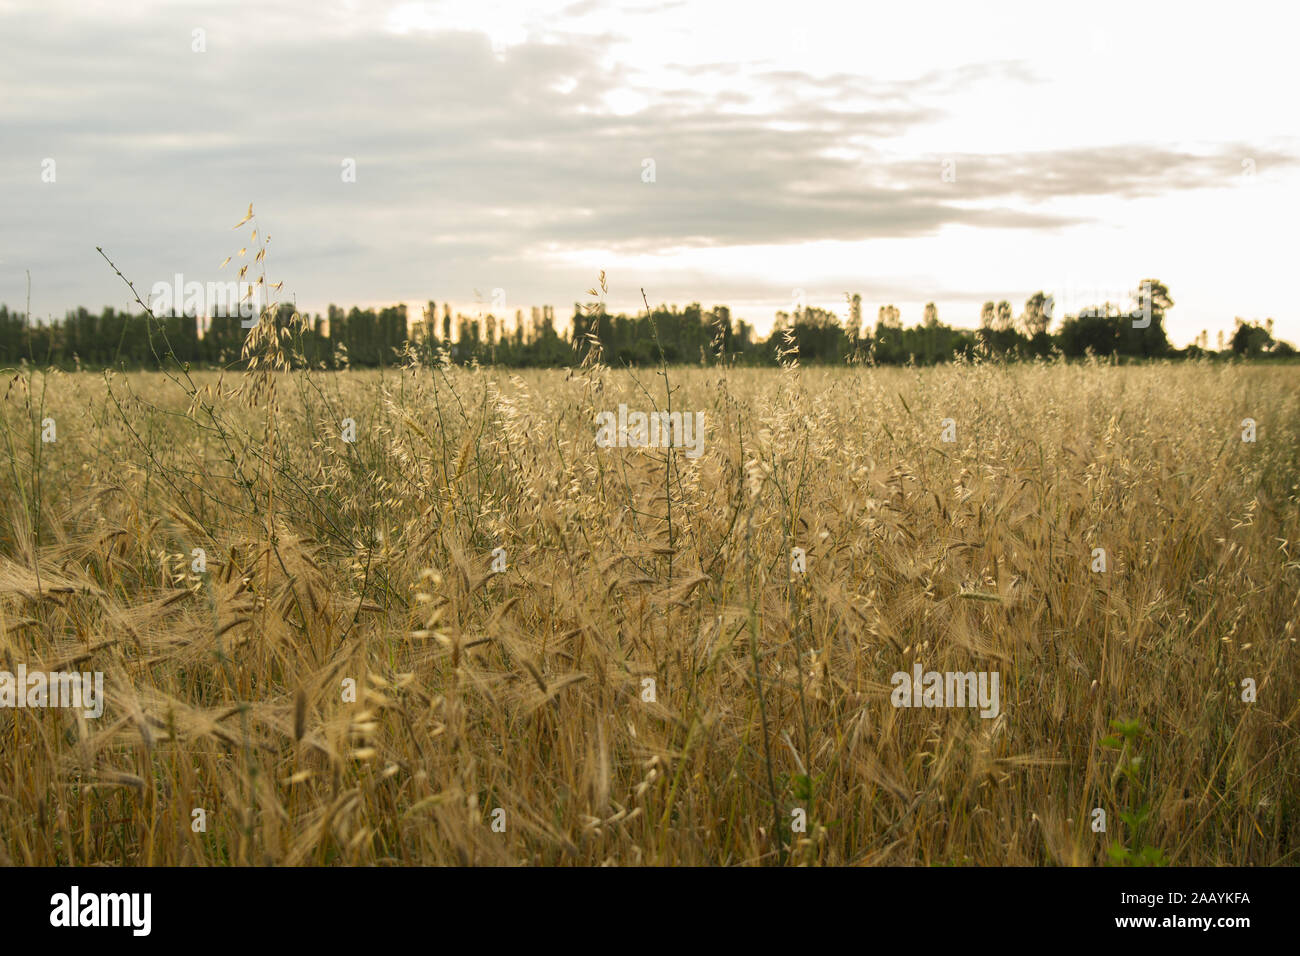 Épis de blé dans un champ de blé.Récolte de blé au coucher du soleil. Banque D'Images